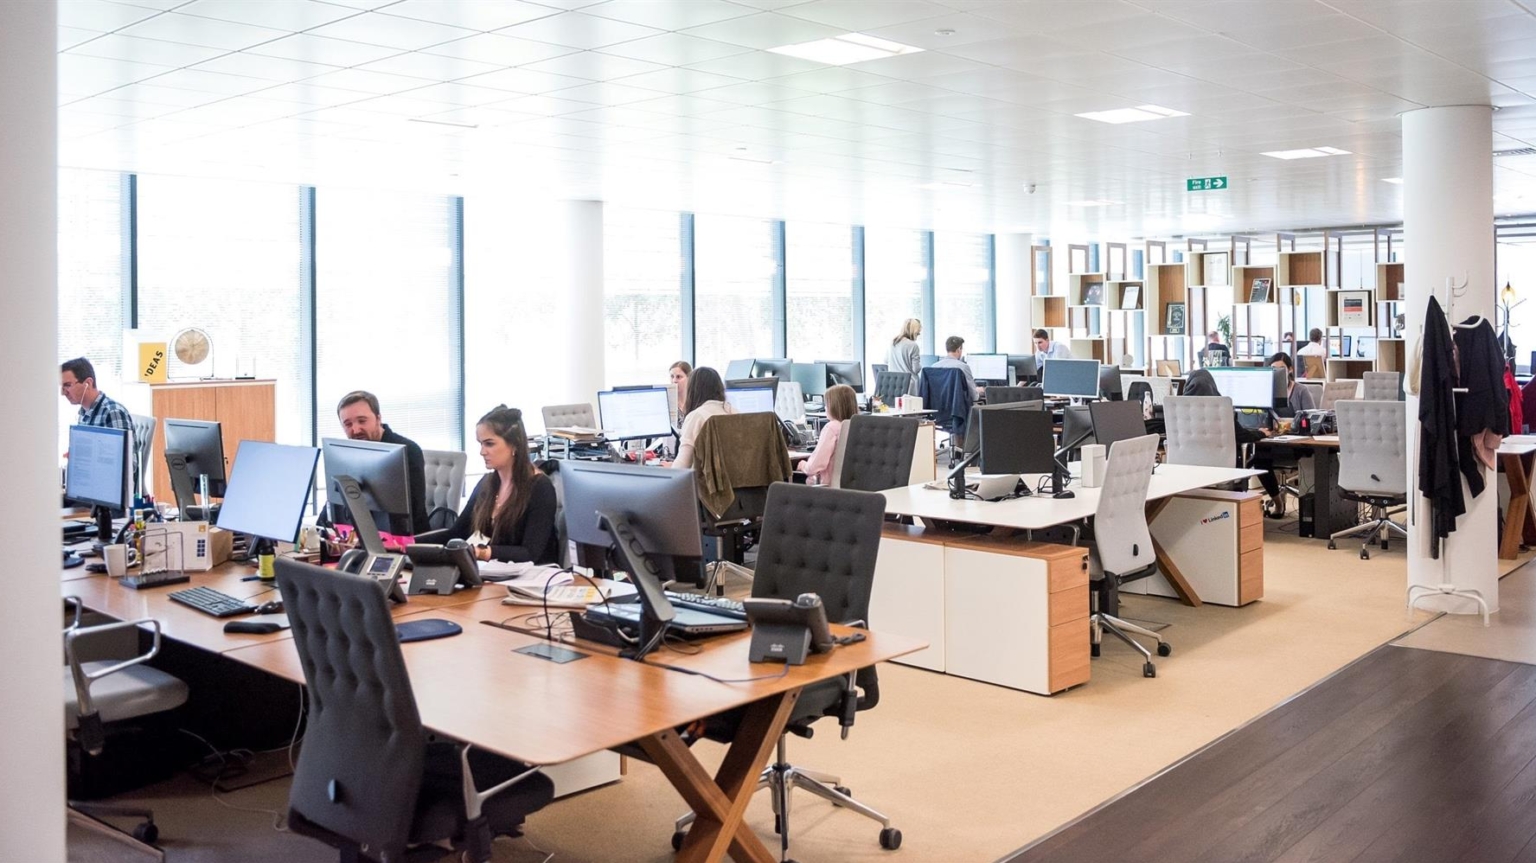 El espacio de trabajo: la transformación de las oficinas para un futuro sostenible